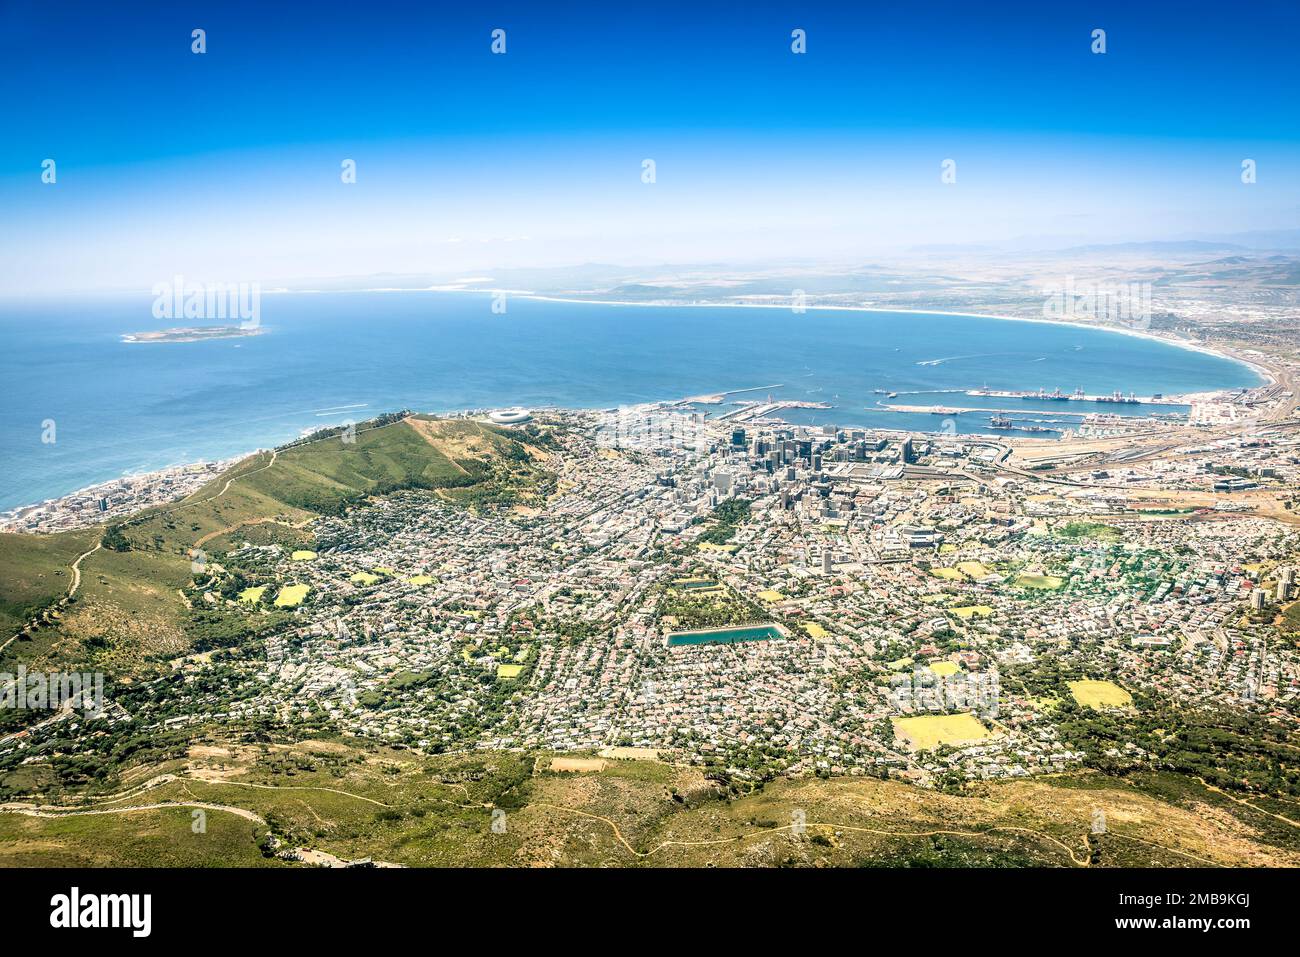 Luftaufnahme der Skyline von Kapstadt vom Aussichtspunkt - Südafrikanische Stadtbesichtigung - Ausflug zum Panoramablick im modernen Sieben Naturwunder Tabl Stockfoto